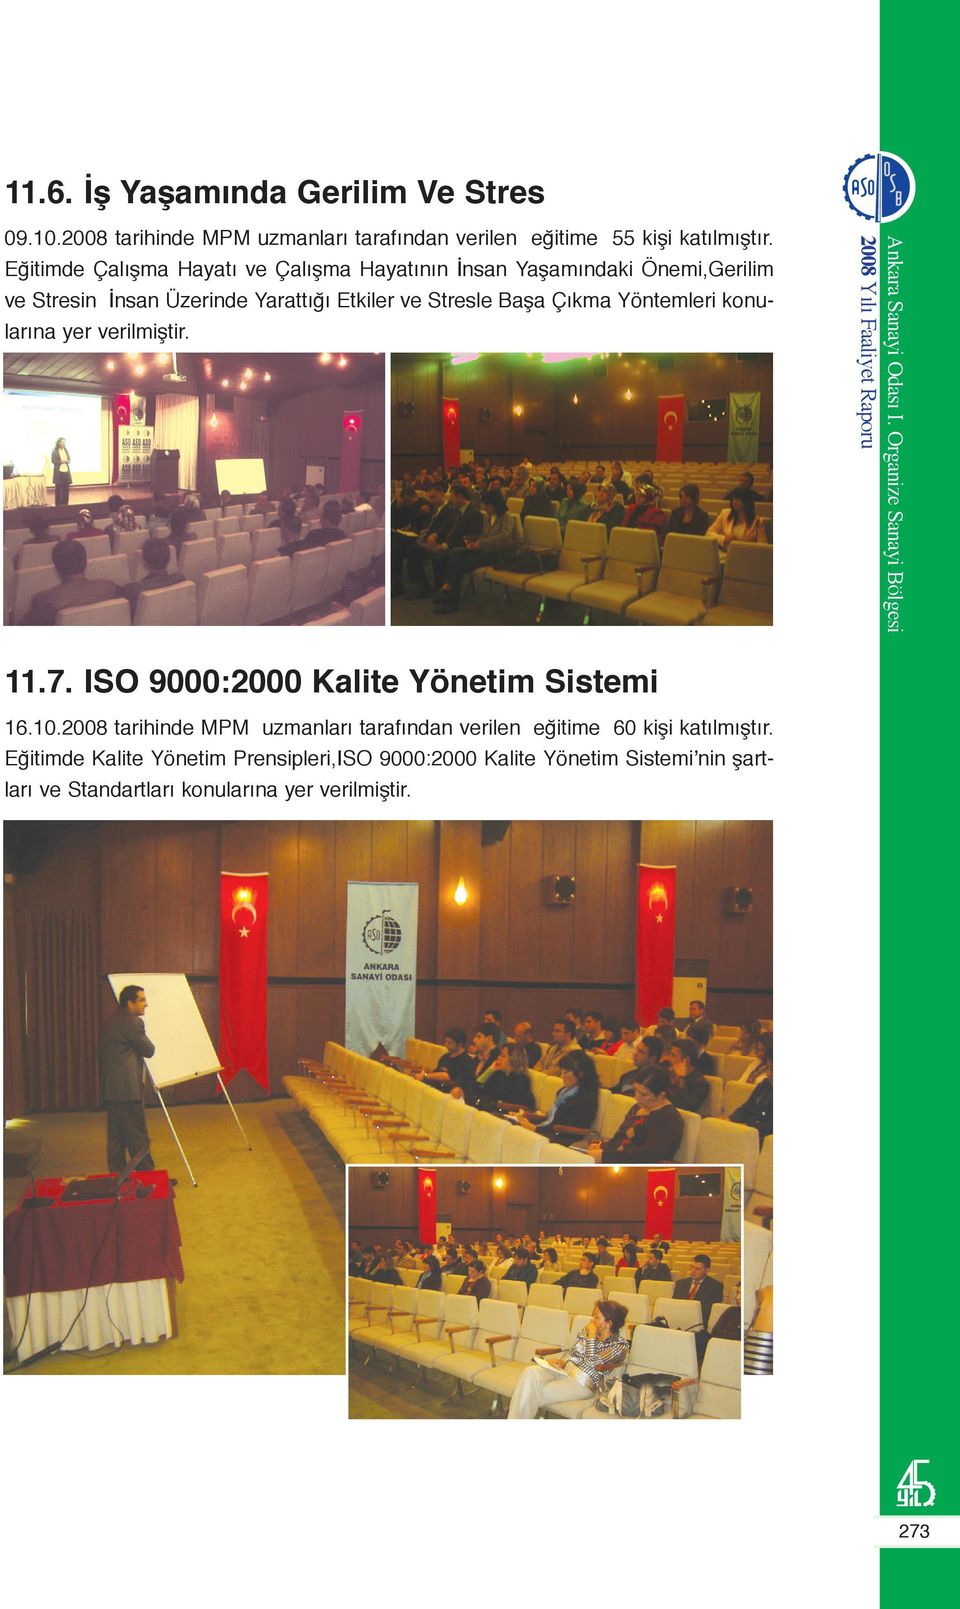 Çıkma Yöntemleri konularına yer verilmiştir. 11.7. ISO 9000:2000 Kalite Yönetim Sistemi 16.10.